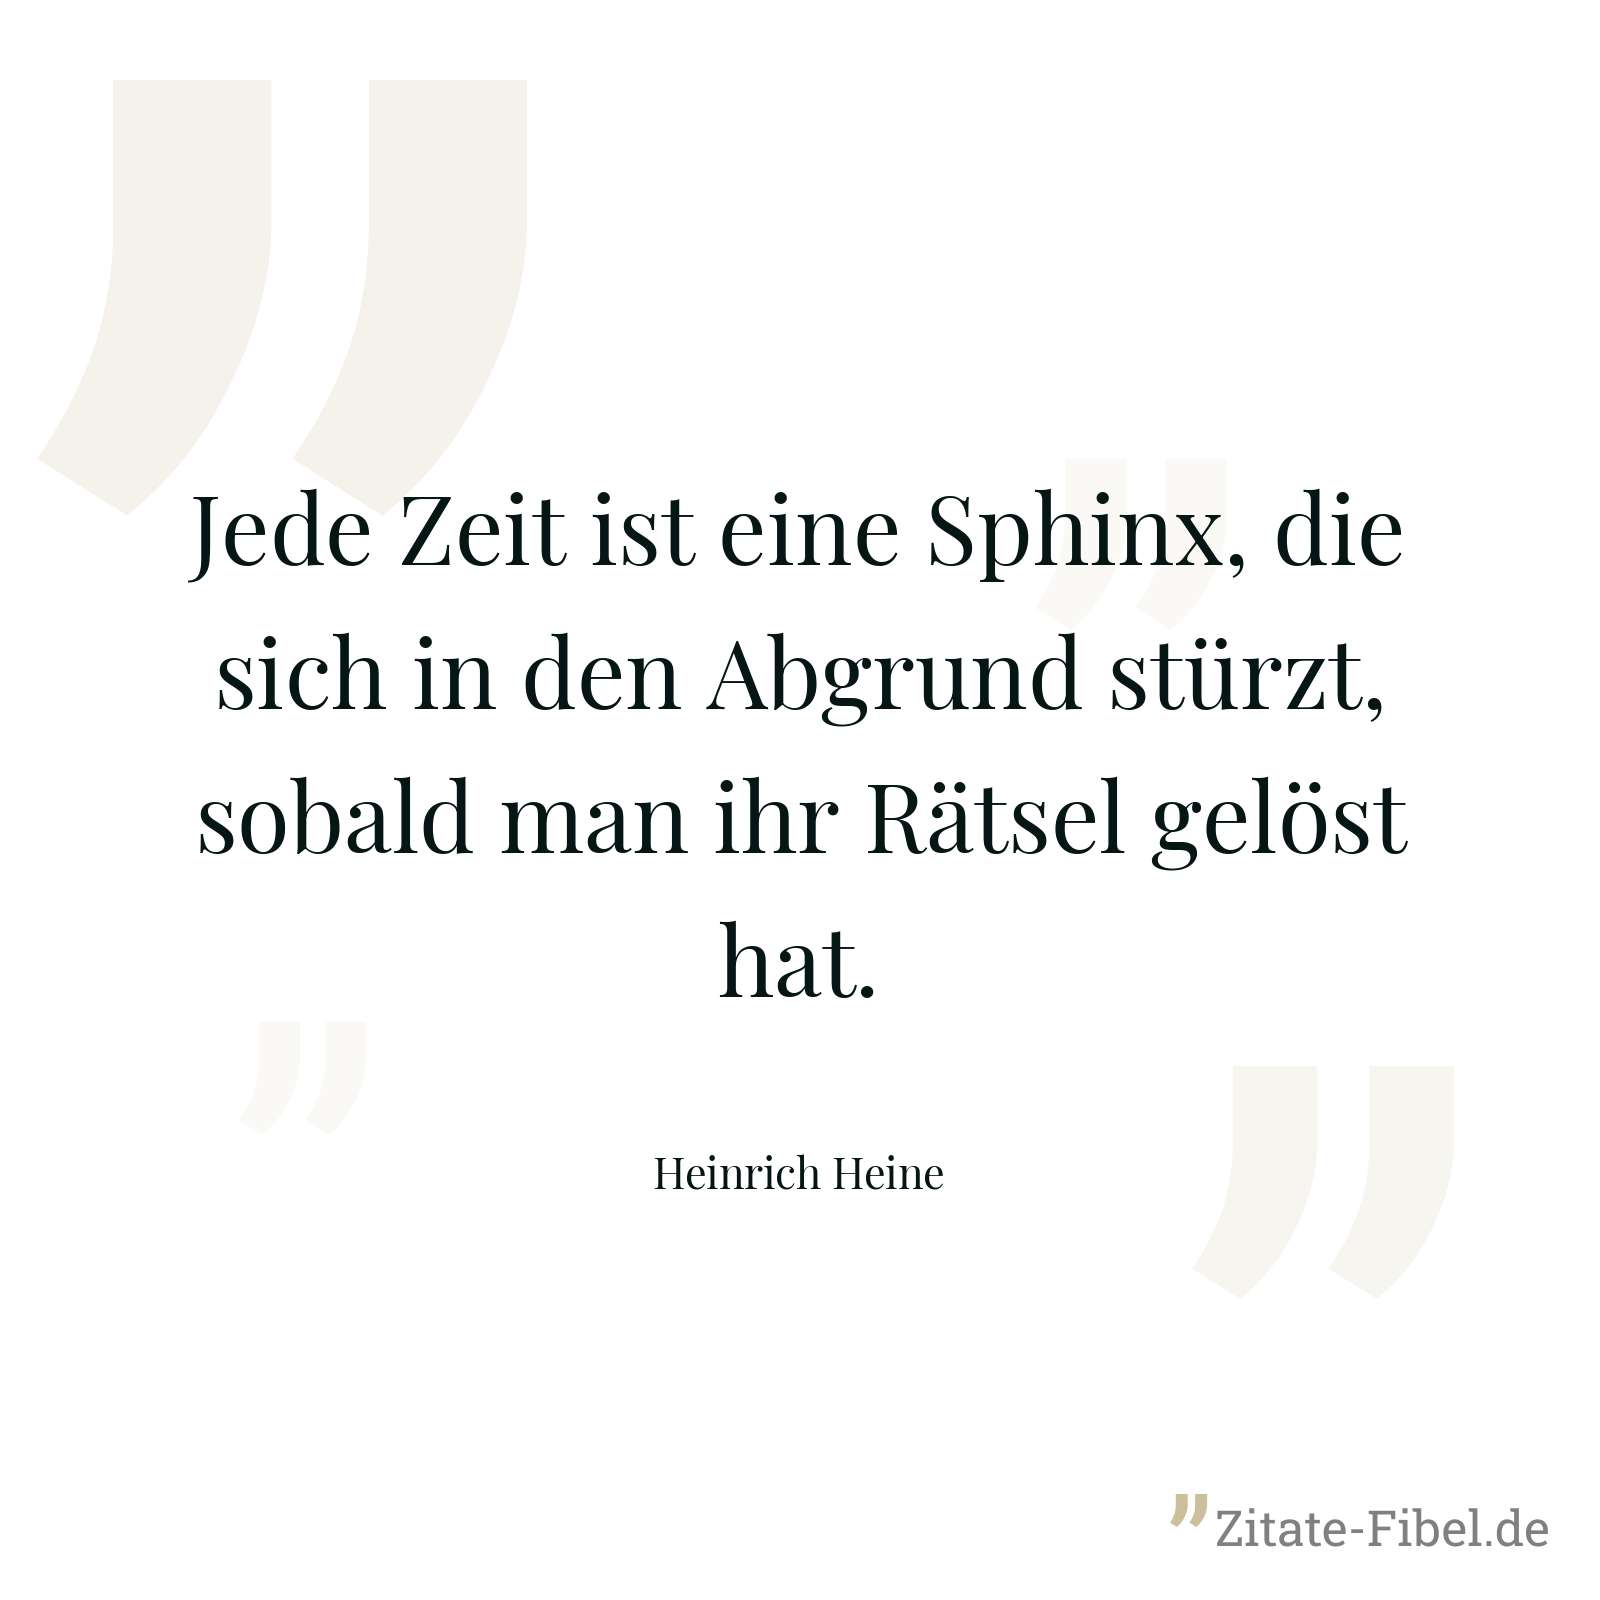 Jede Zeit ist eine Sphinx, die sich in den Abgrund stürzt, sobald man ihr Rätsel gelöst hat. - Heinrich Heine